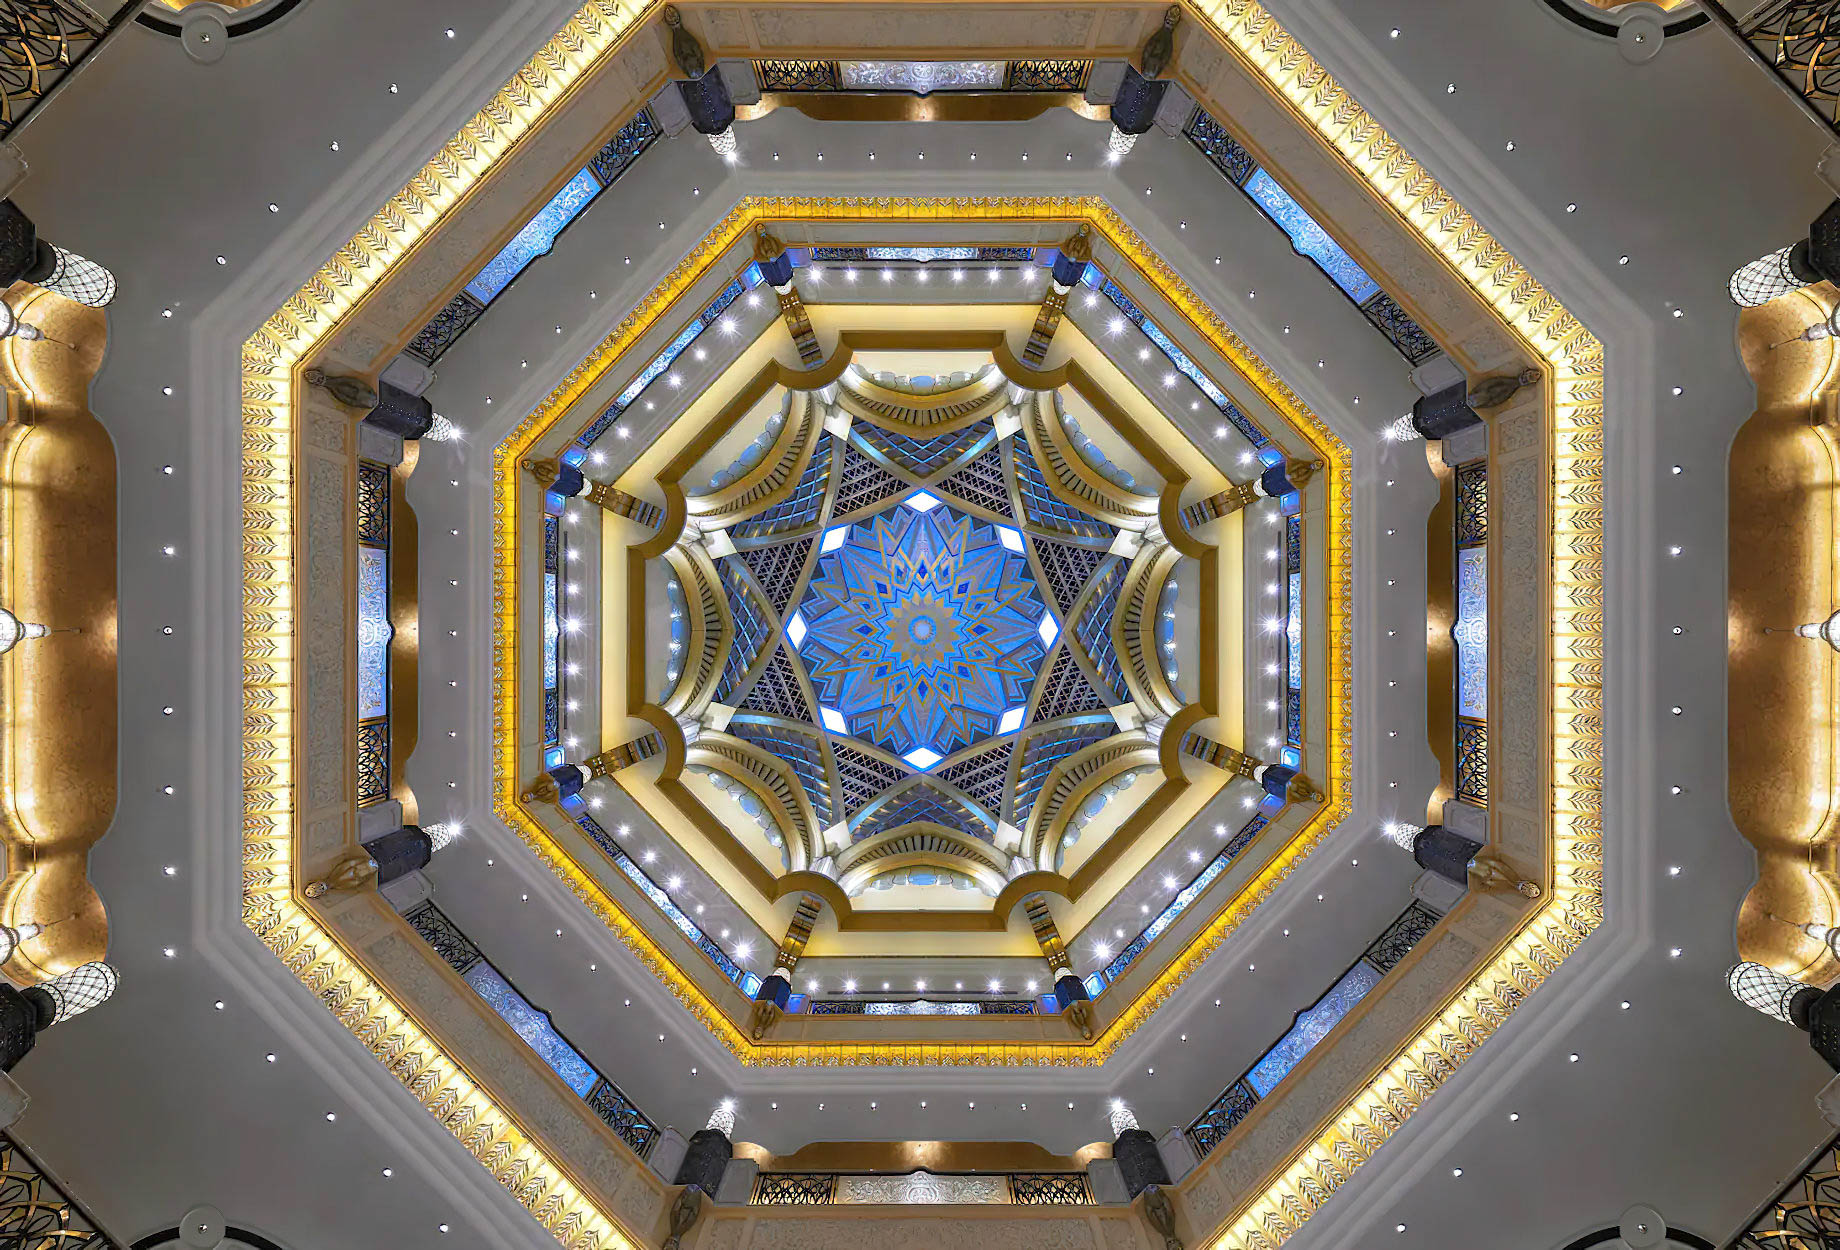 Emirates Palace Abu Dhabi Hotel – Abu Dhabi, UAE – Ceiling Dome